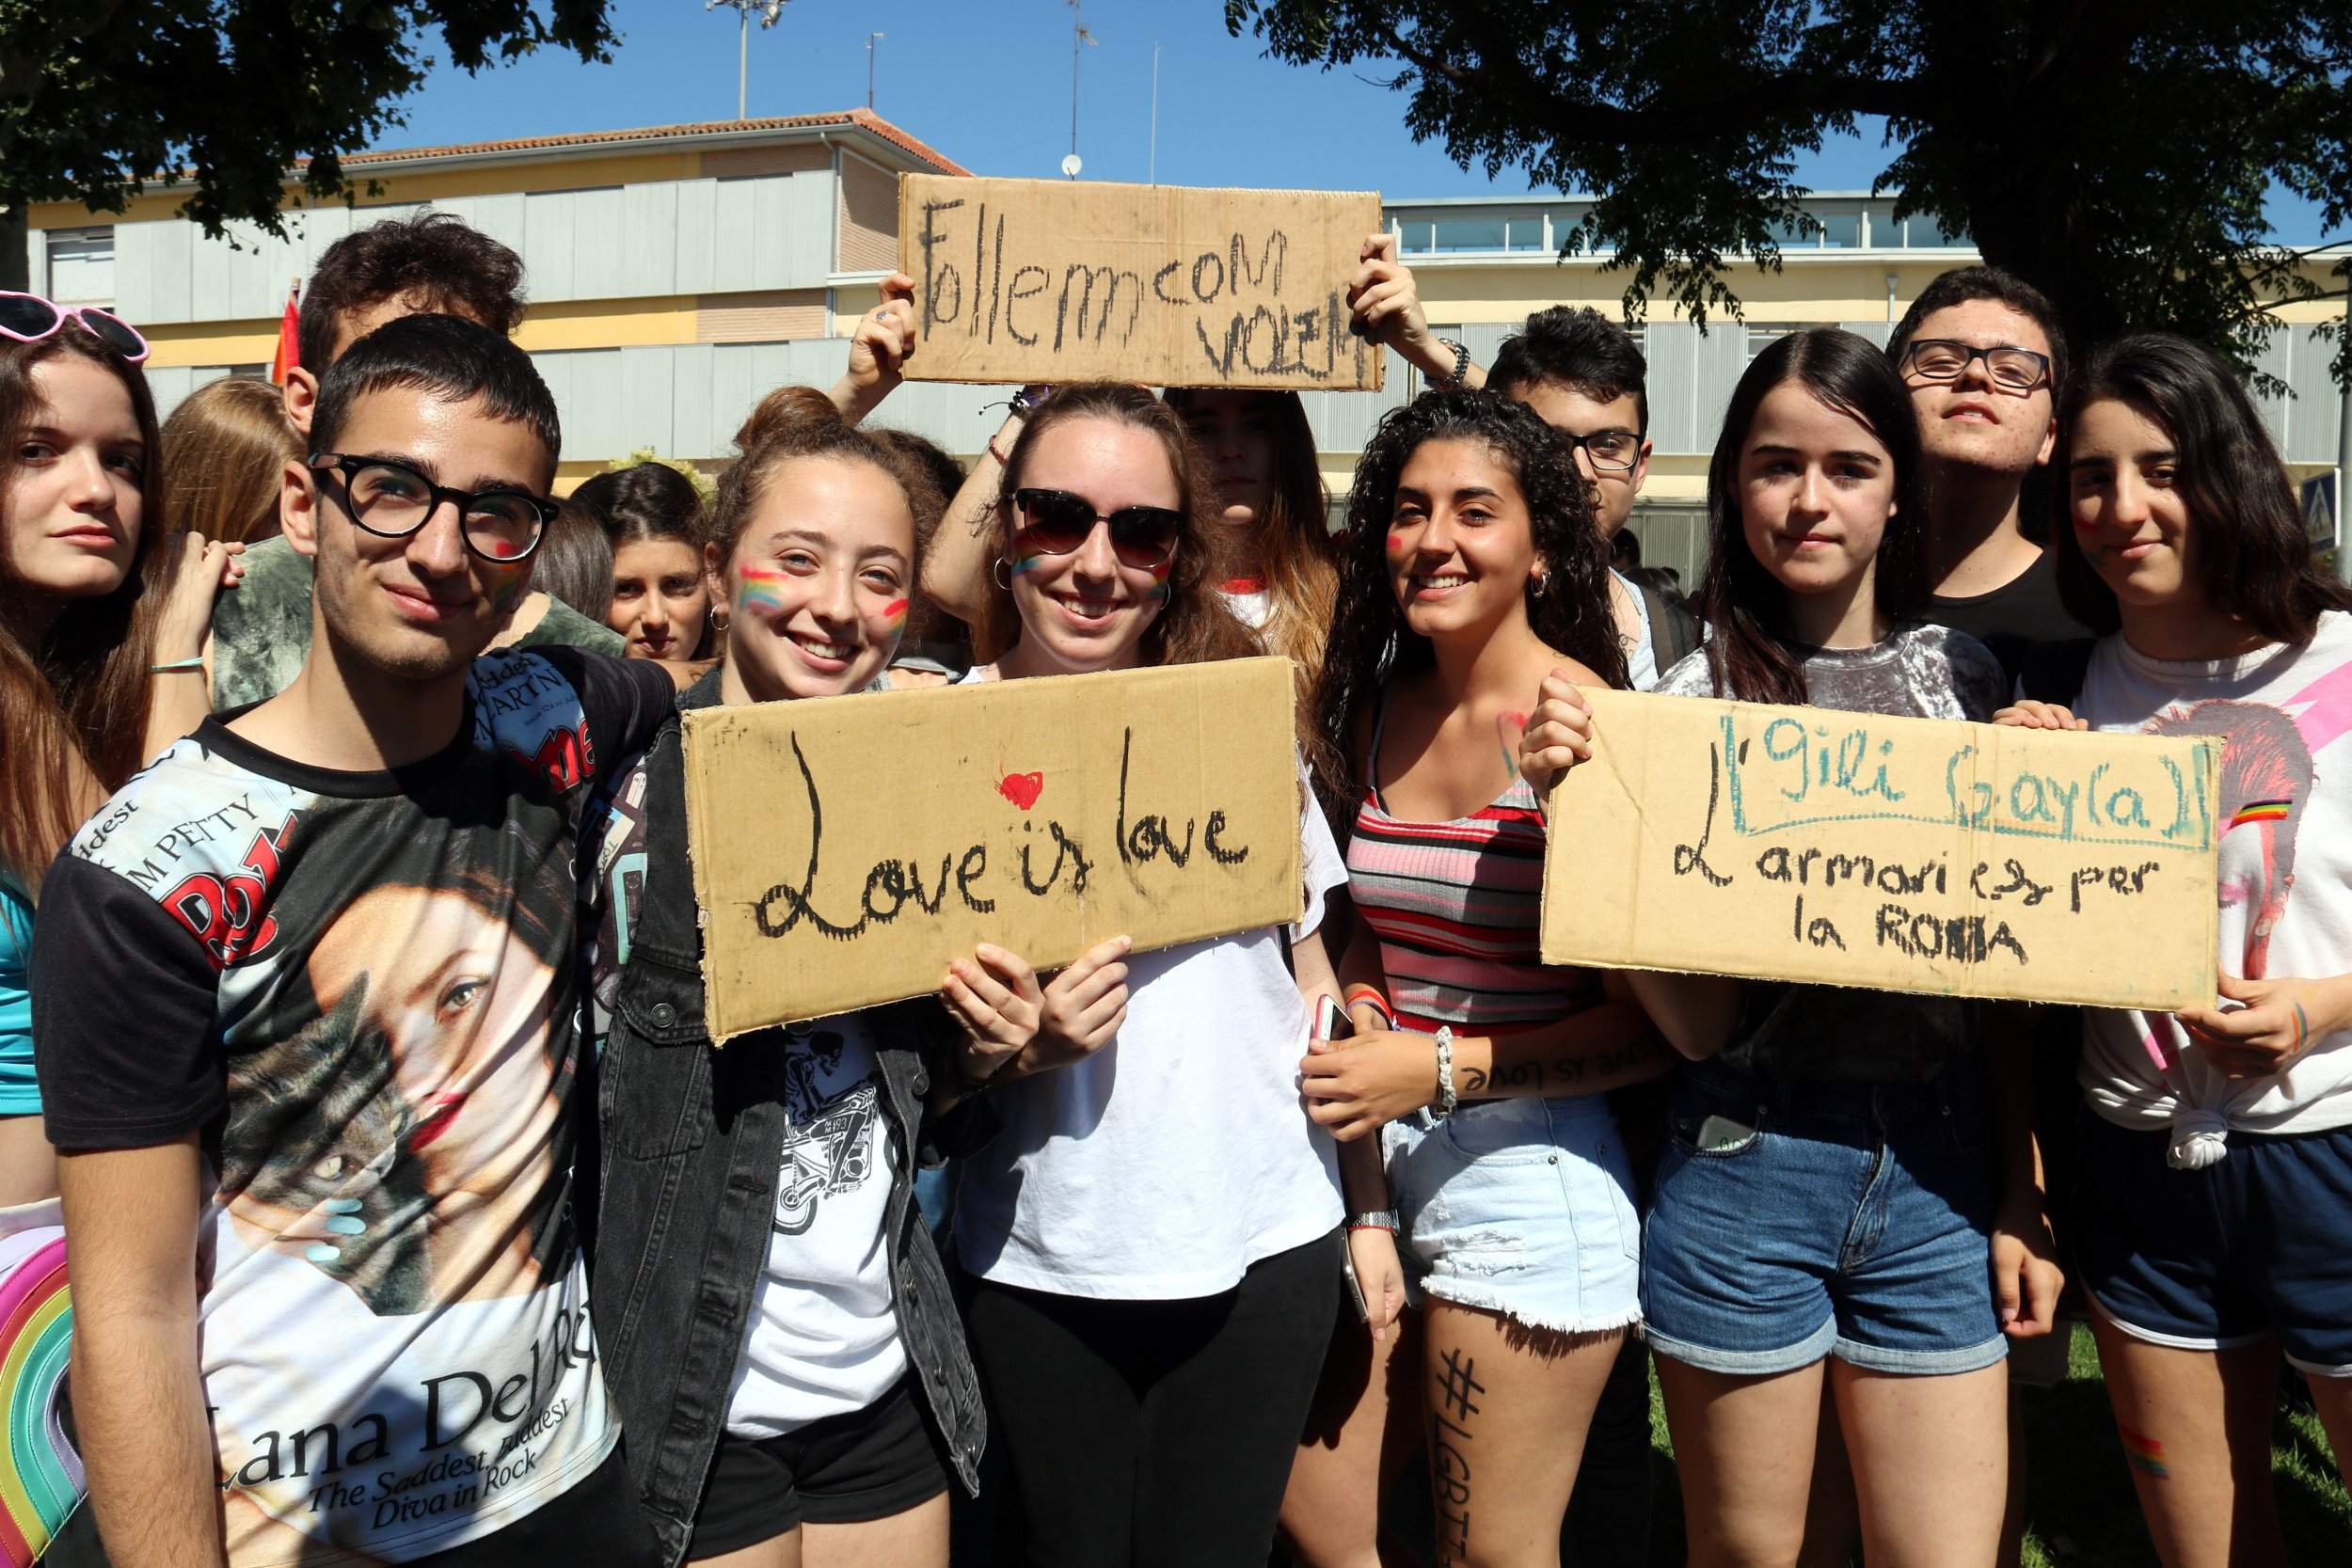 El professor de Lleida demana perdó per les paraules homòfobes i agafa la baixa